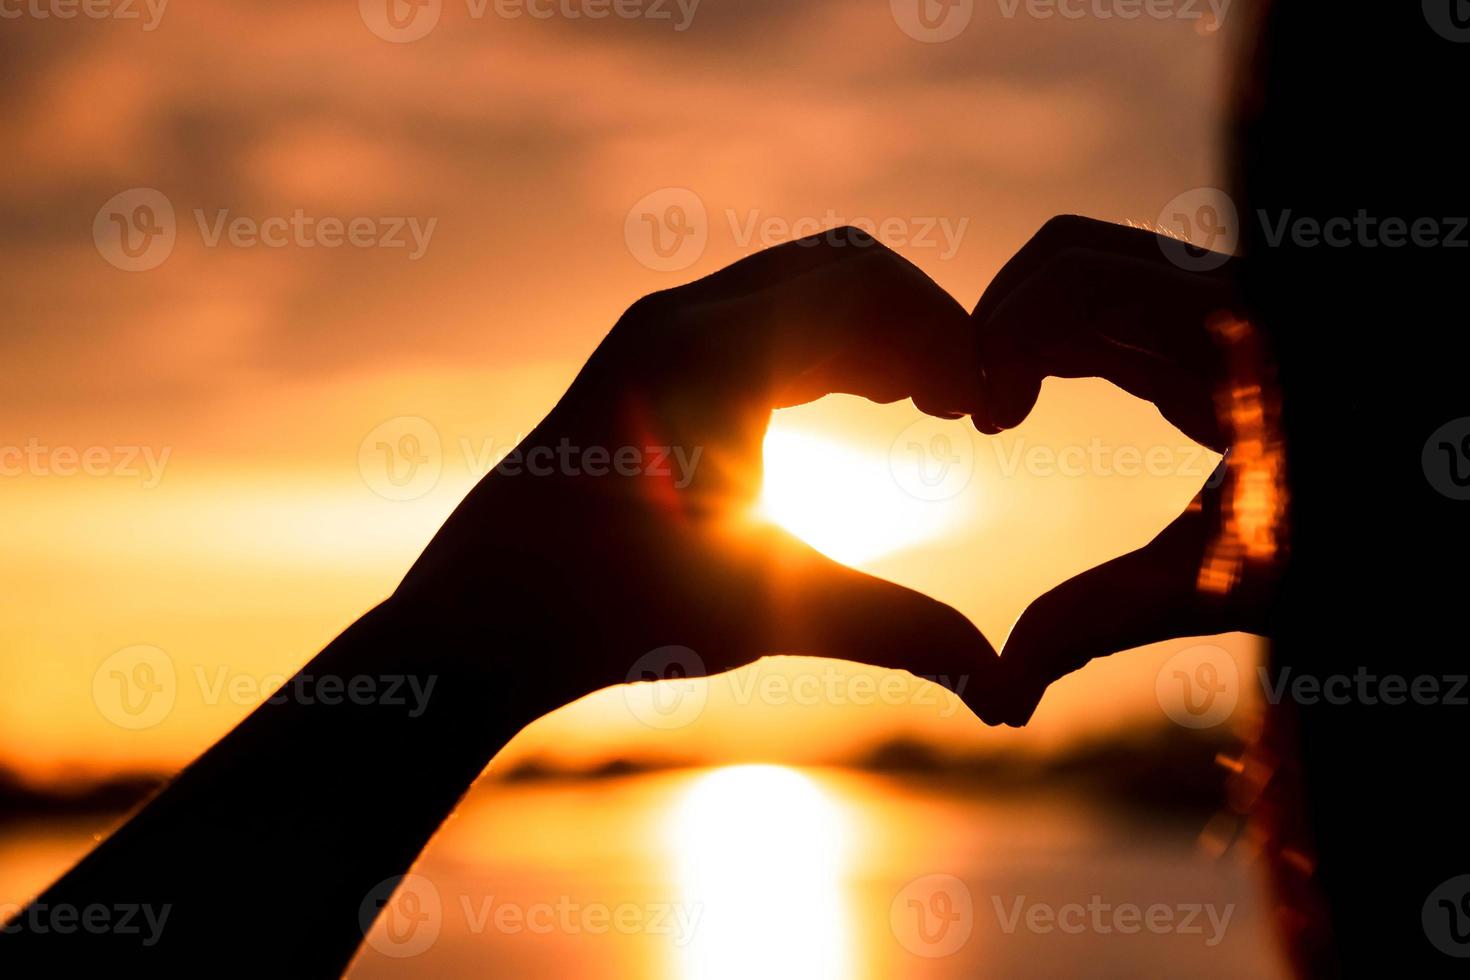 silhouette main en forme de coeur avec lever de soleil au milieu et fond de plage photo